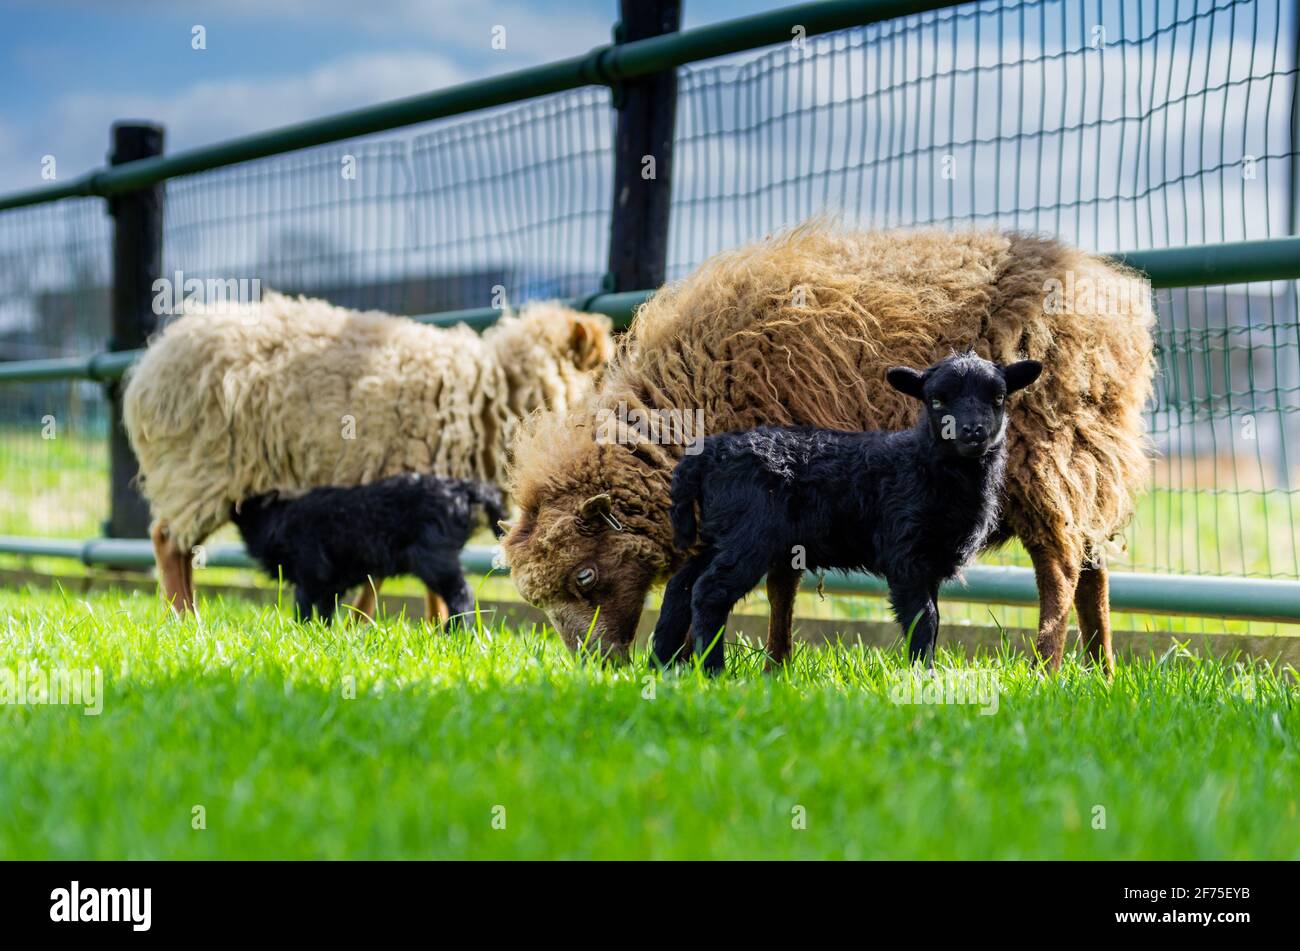 Les mères blondes moutons Ouessant avec agneaux noirs. Un agneau boit du lait de sa mère, l'autre agneau regarde alerte à l'appareil photo. Temps de printemps dans la prairie Banque D'Images